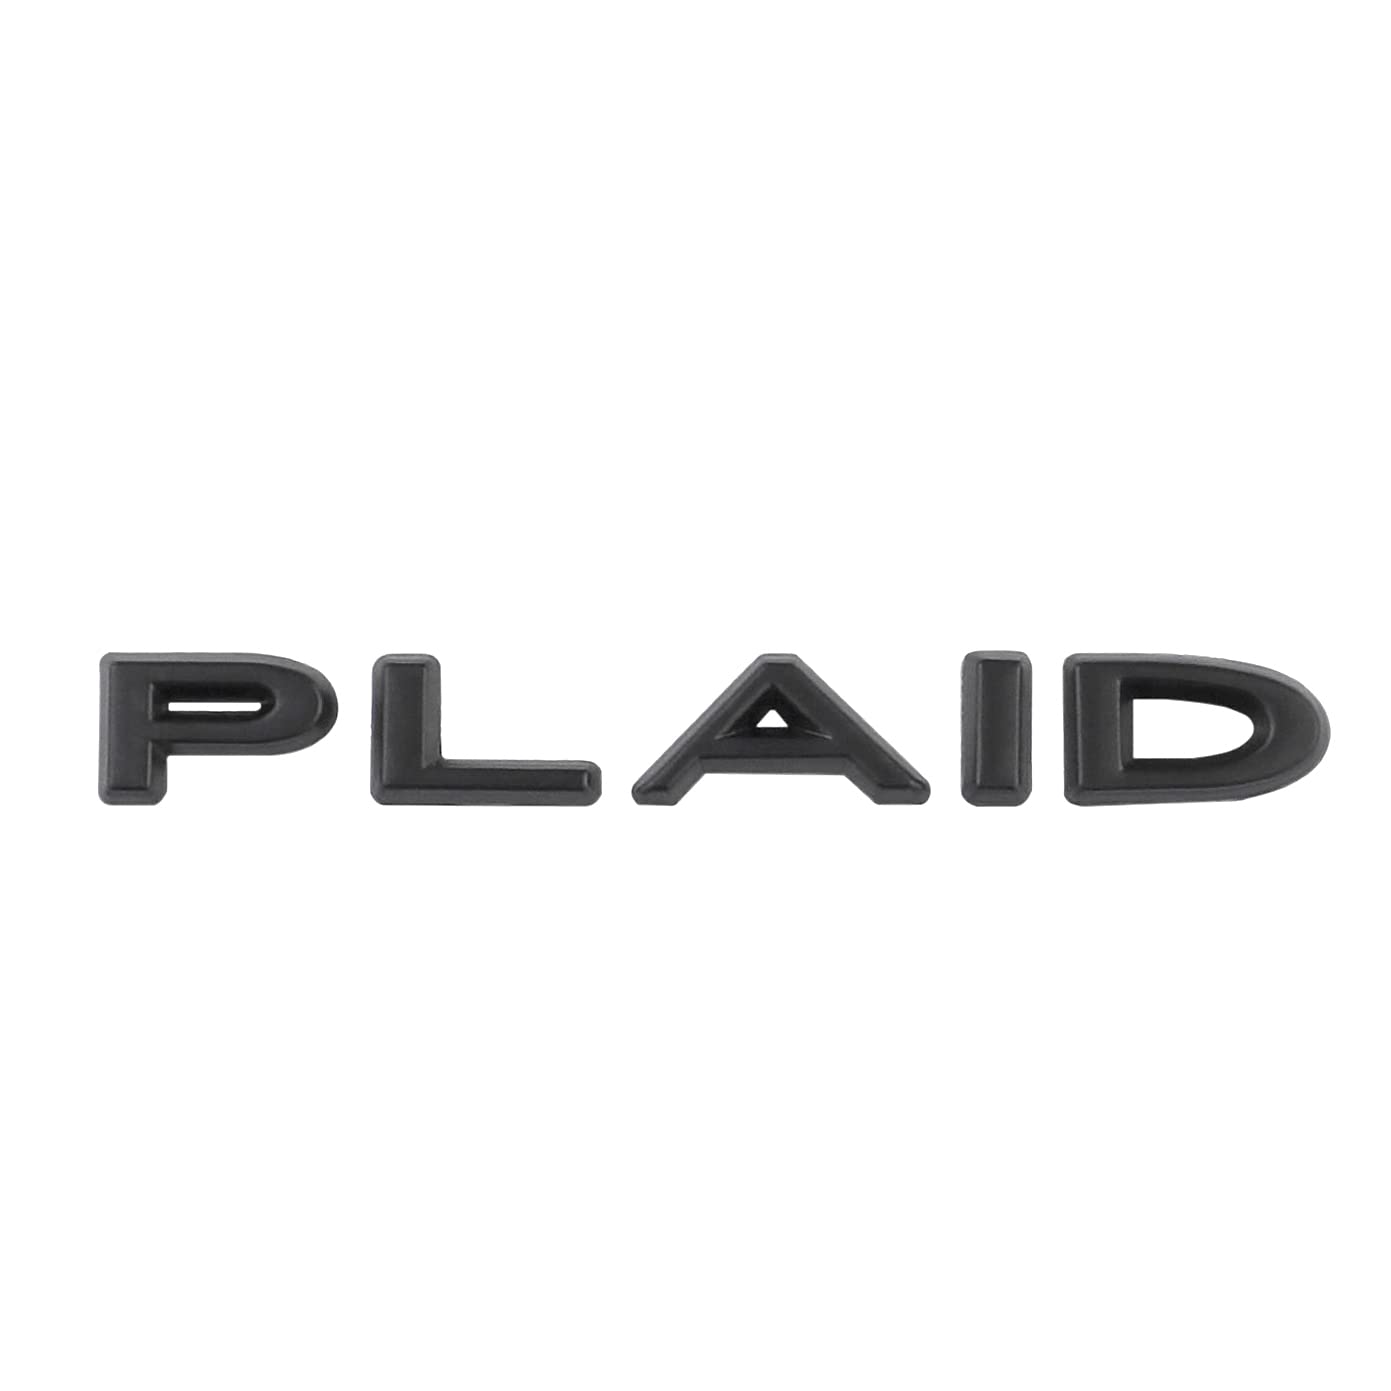 PLAID Emblem Aufkleber für Tesla Model 3/X Modell S/Y Trunk Tail Letters Emblem Badge Styling Aufkleber Trim Zubehör (Schwarz) von SGW